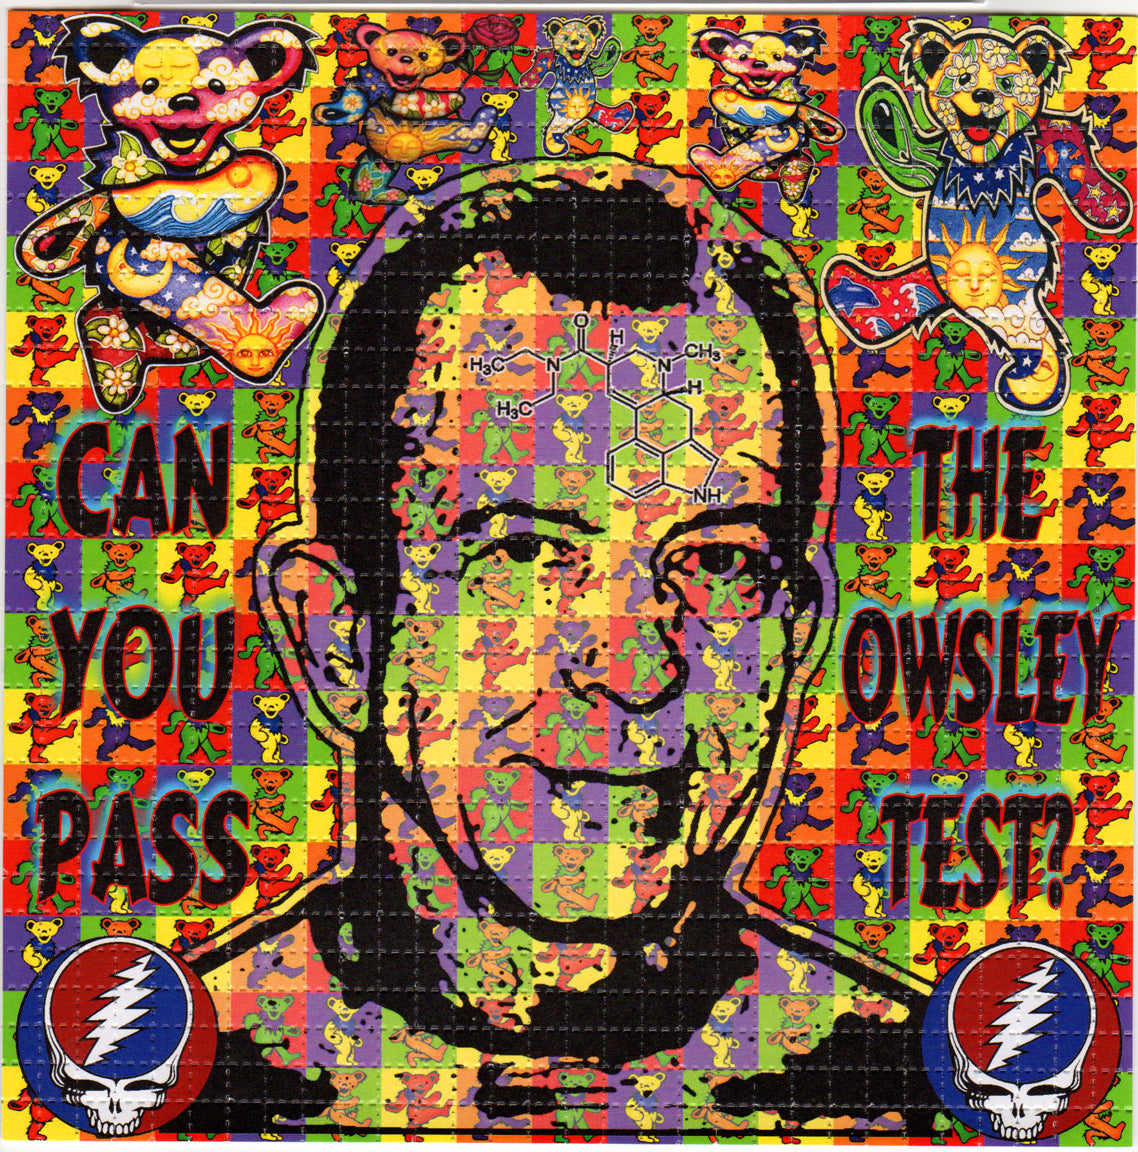 Owsley Stanley LSD blotter art print